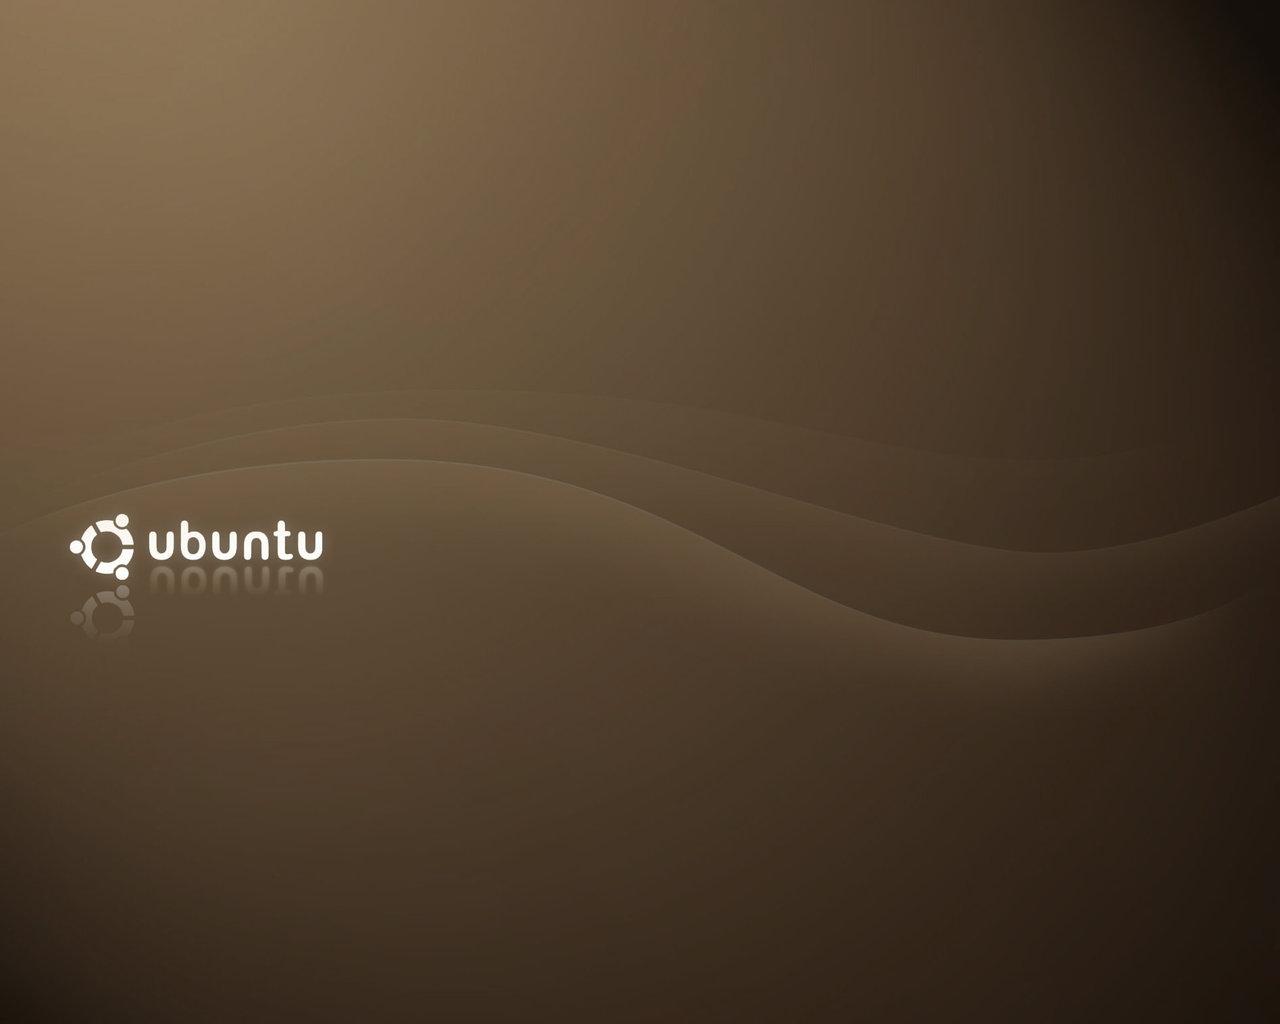 Ubuntu Linux wallpaper free desktop background wallpaper image